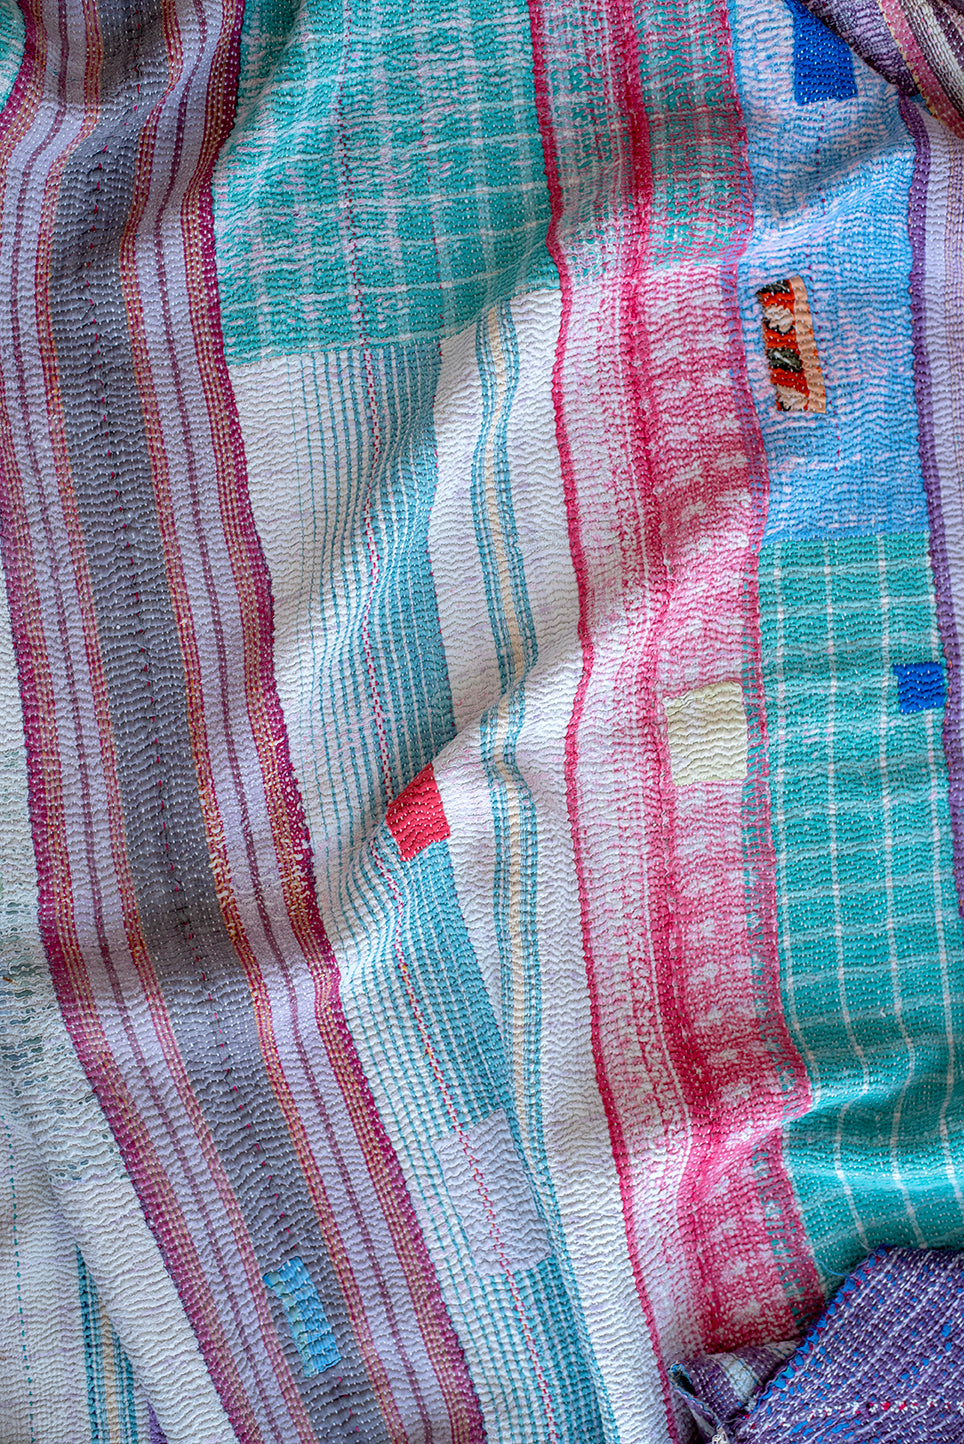 The Dogwood Quilt – Vintage Kantha Quilt